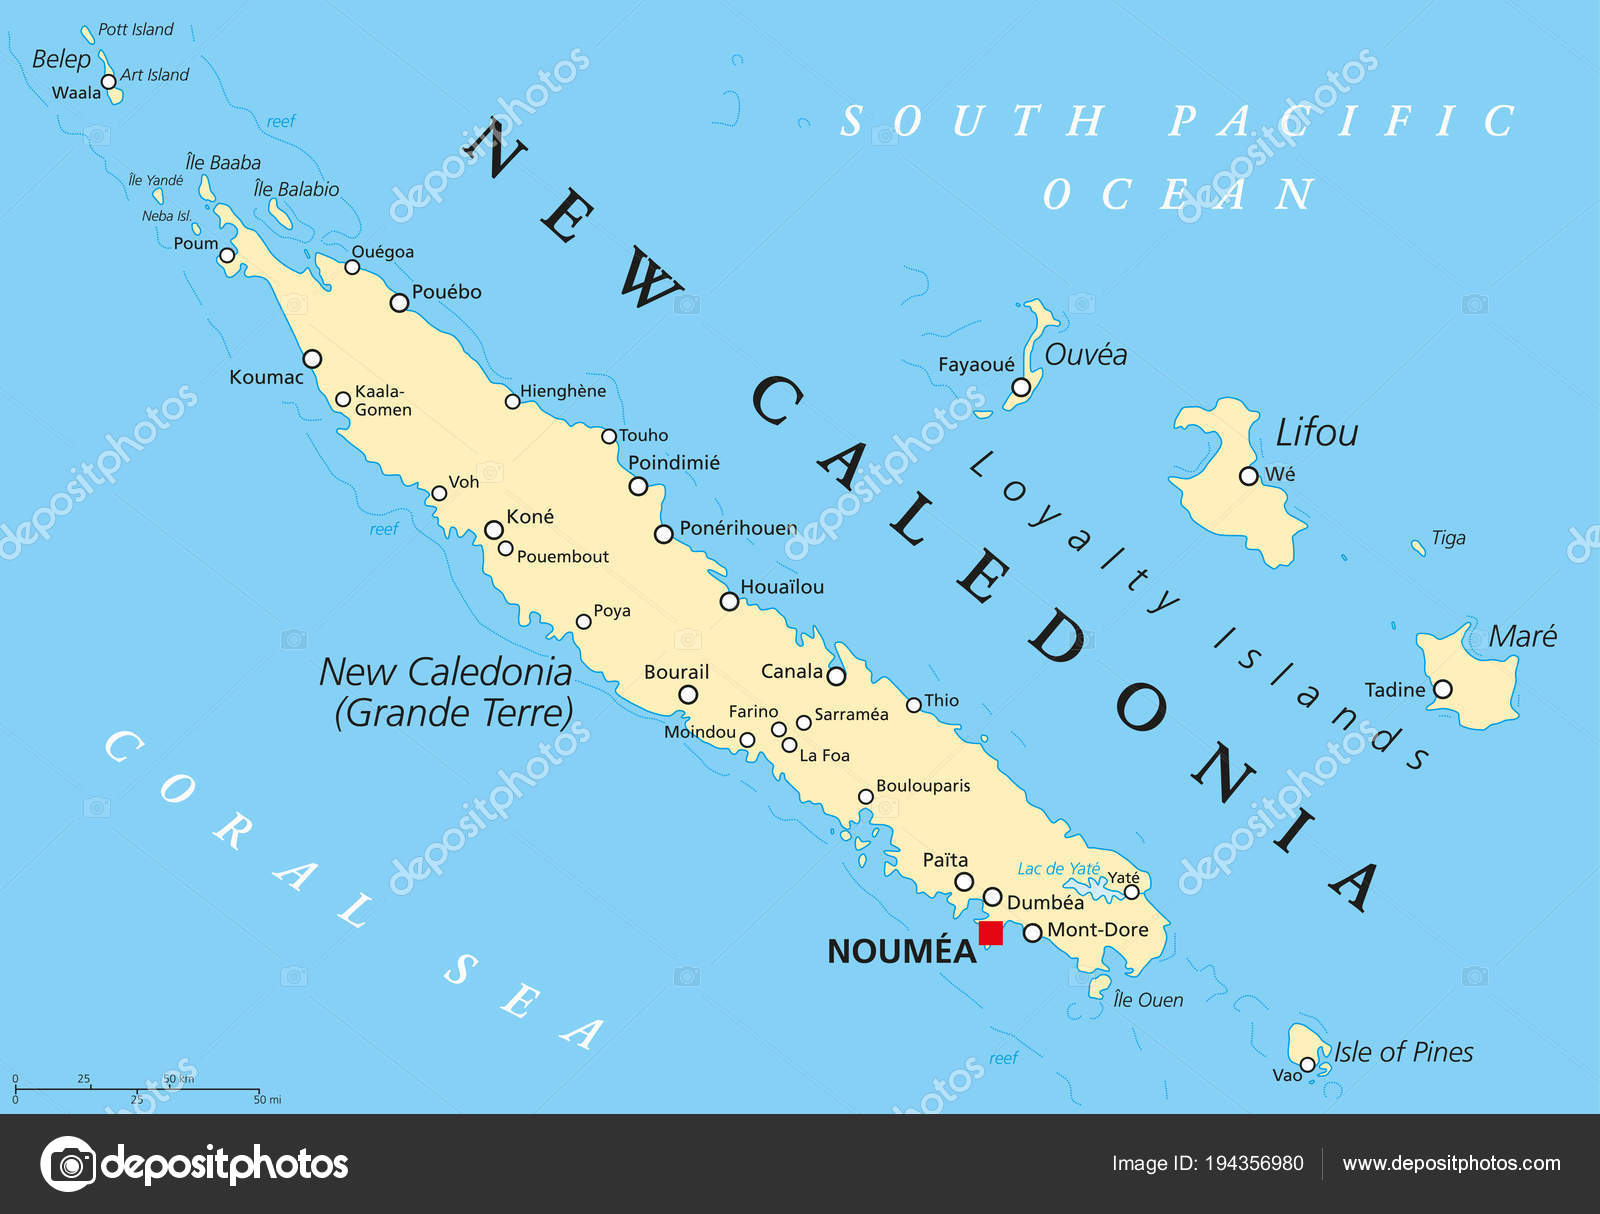 Новая каледония на карте. Остров новая Каледония на карте. Каледония на карте.